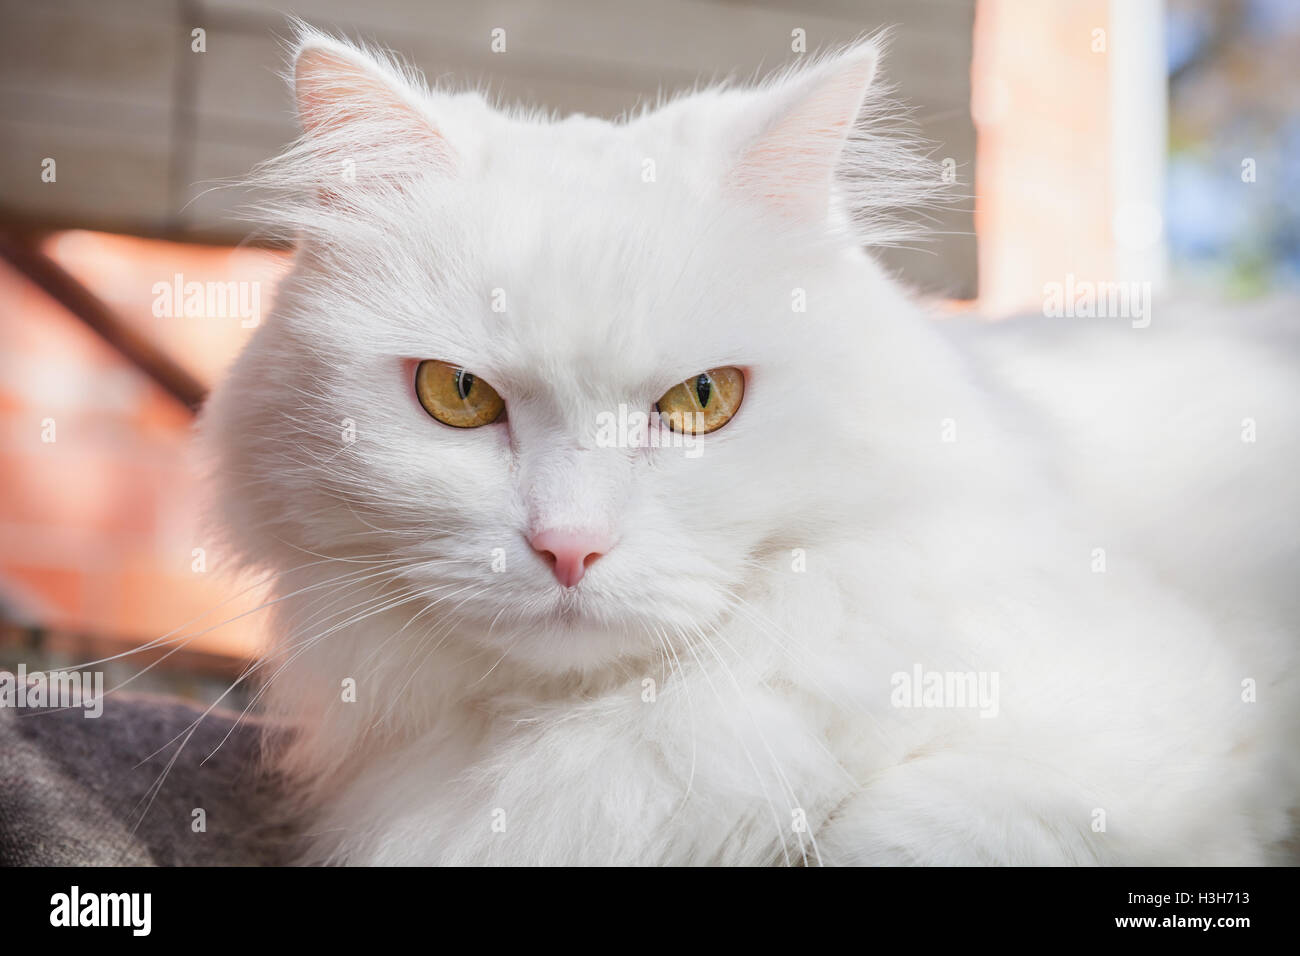 Close-up portrait of white fluffy cat avec des yeux jaunes Banque D'Images